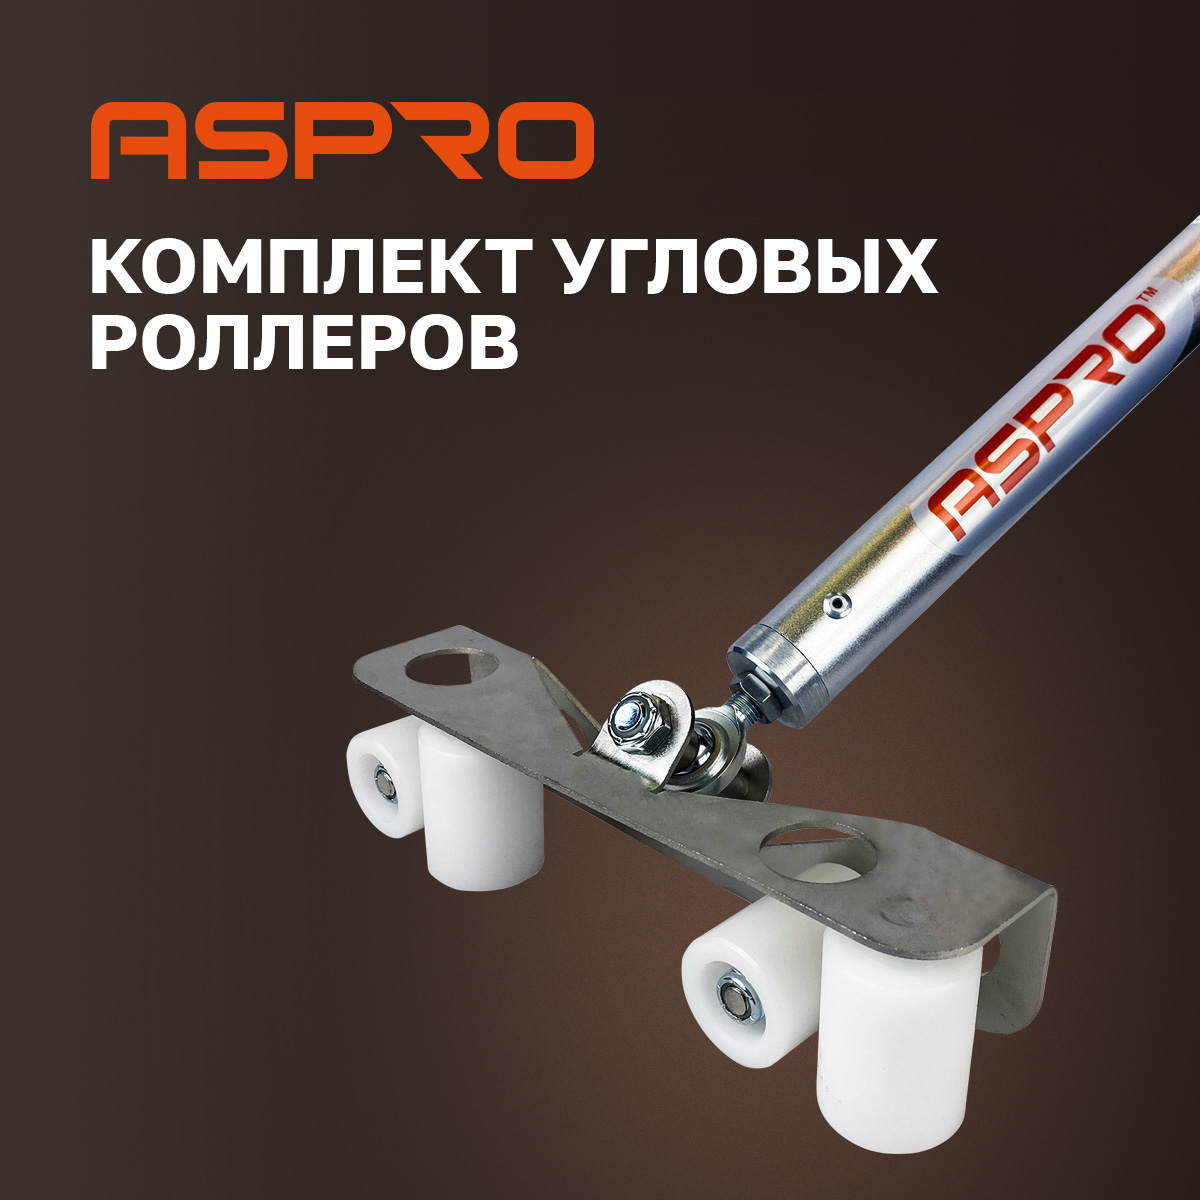 Комплект угловых роллеров Aspro, 102280 комплект петель для угловых каркасов standers 90 градусов 2 шт